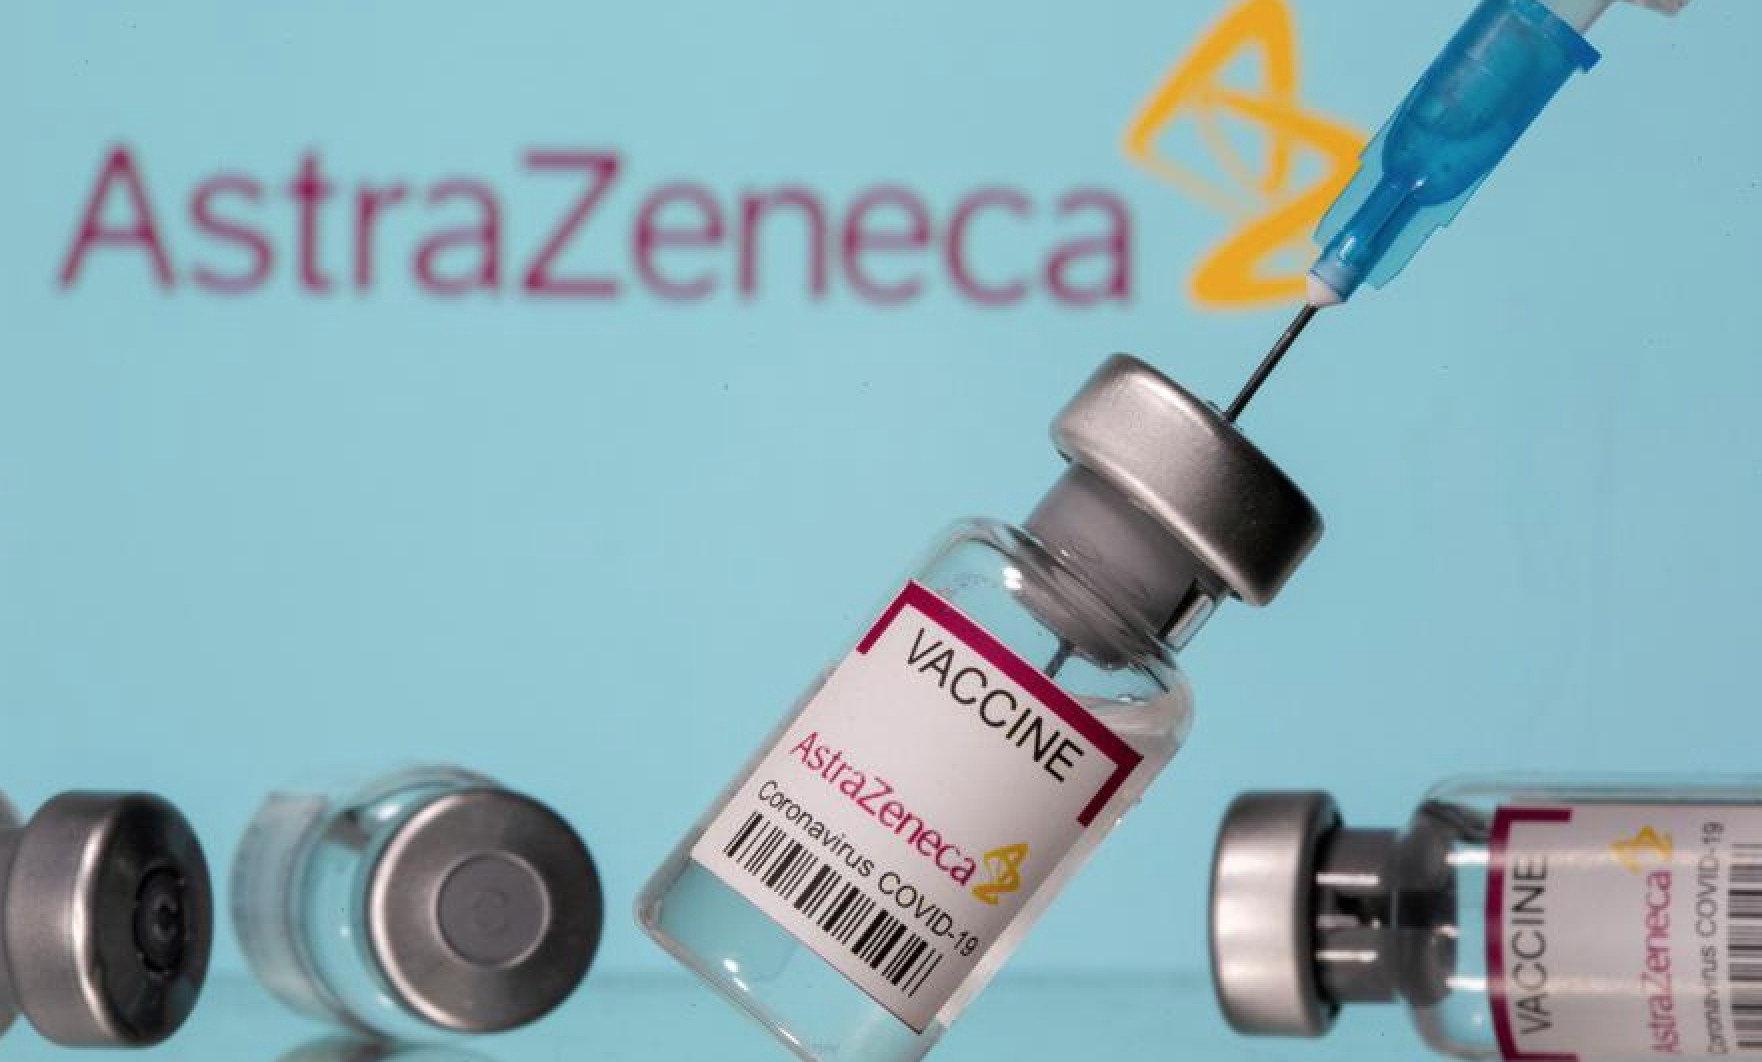 【ドイツ】アストラゼネカ社製コロナワクチンによる脳内血栓 31症例